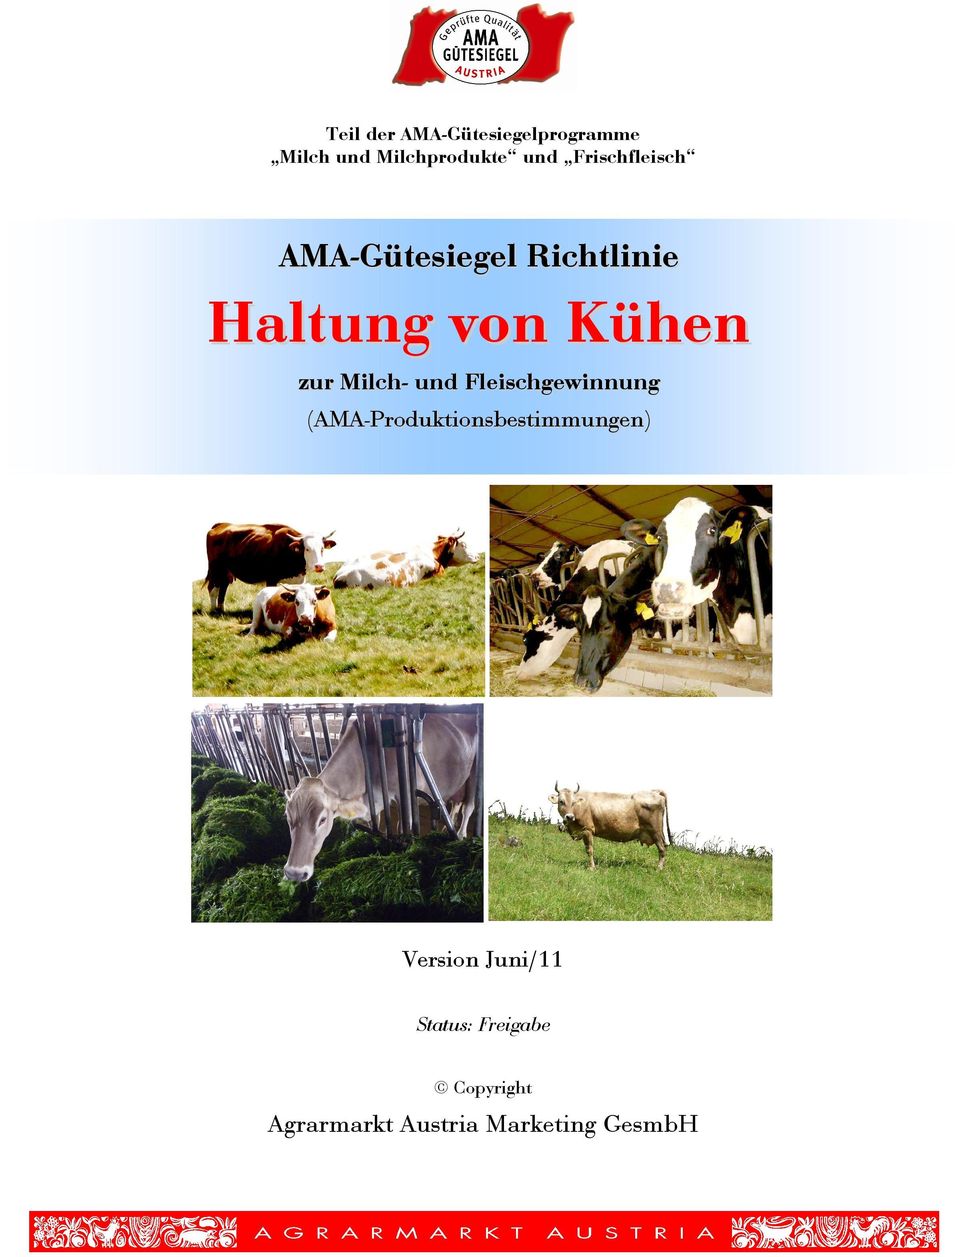 Milch- und Fleischgewinnung (AMA-Produktionsbestimmungen)